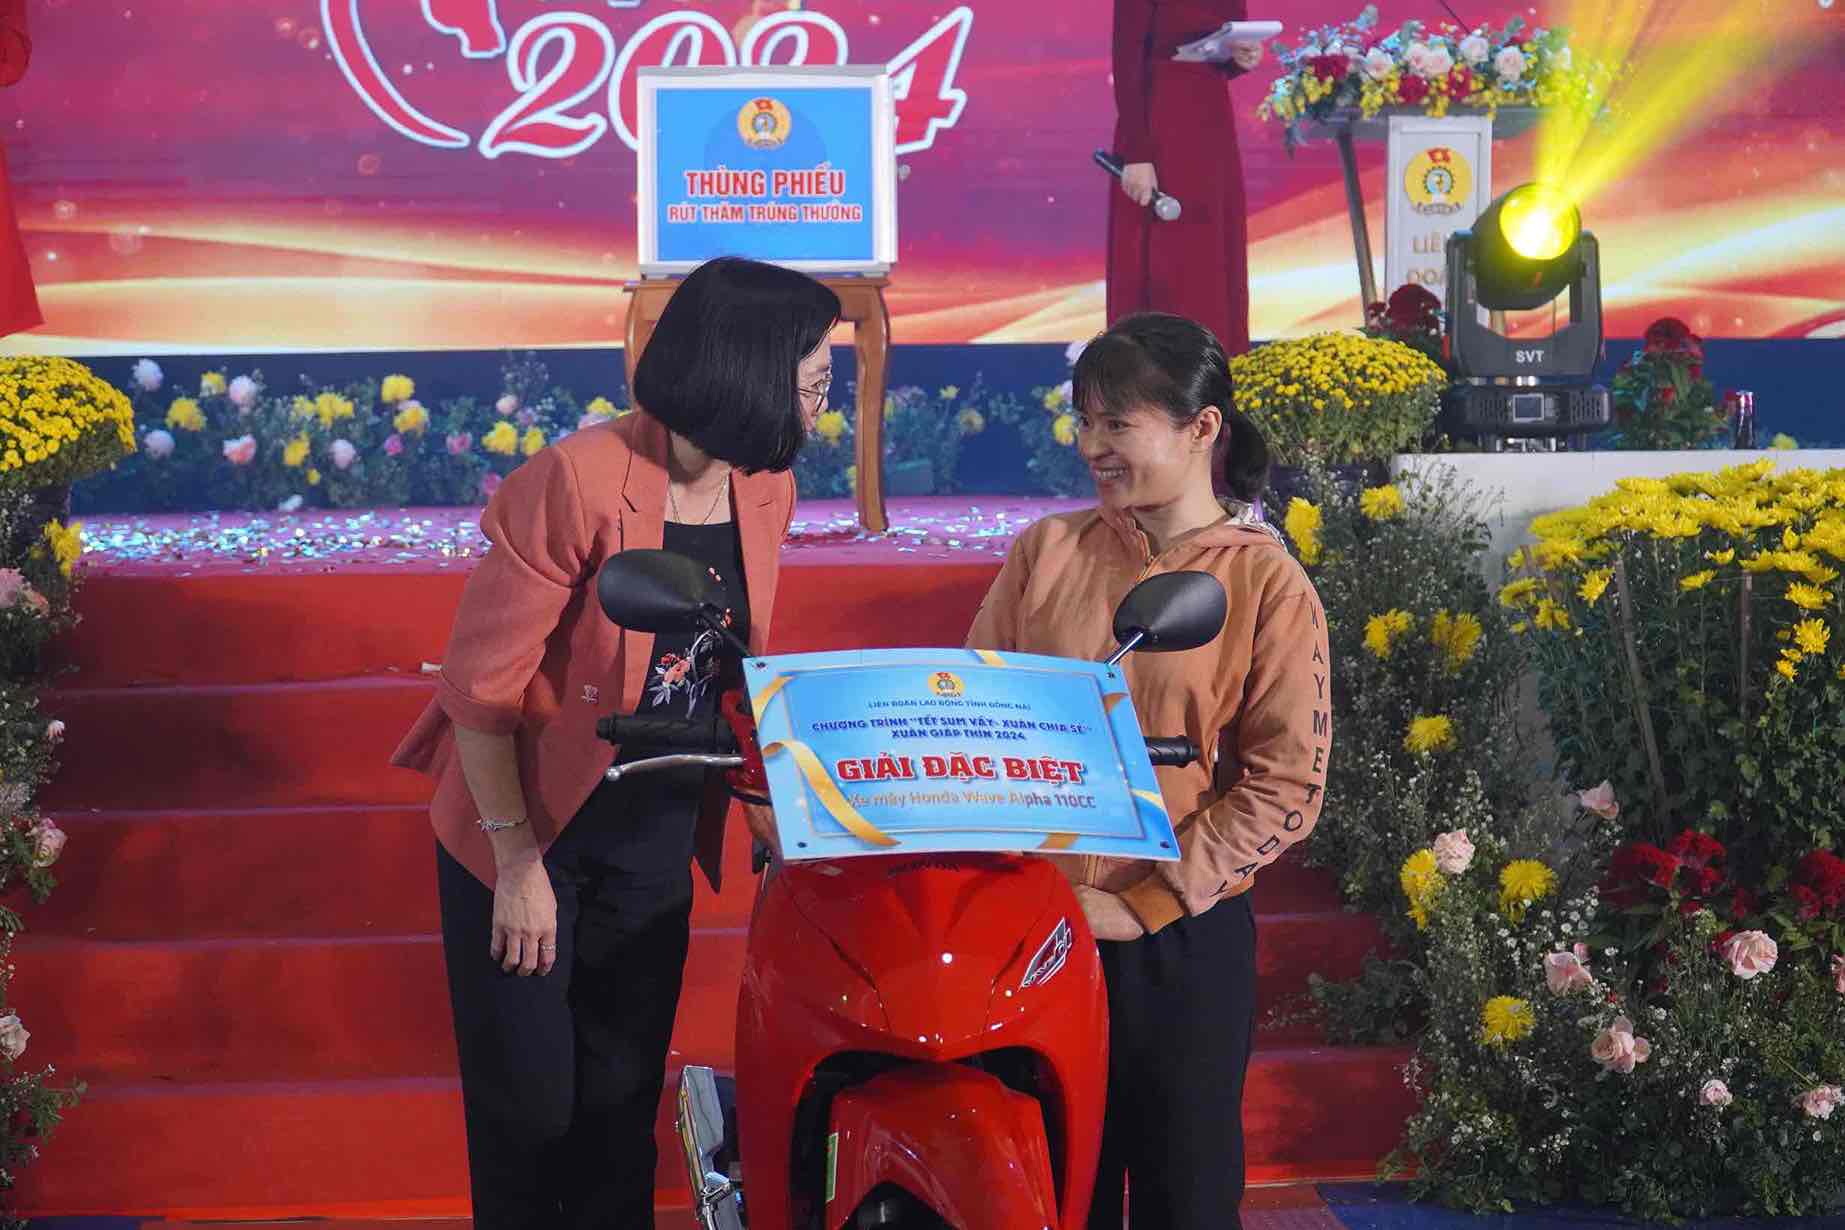 Phó chủ tịch UBND tỉnh Đồng Nai Nguyễn Thị Hoàng (bên trái) đang chúc mừng nữ công nhân trúng giải đặc biệt là một chiếc xe máy tại chương trình rút thăm may mắn. Ảnh: Hà Anh Chiến